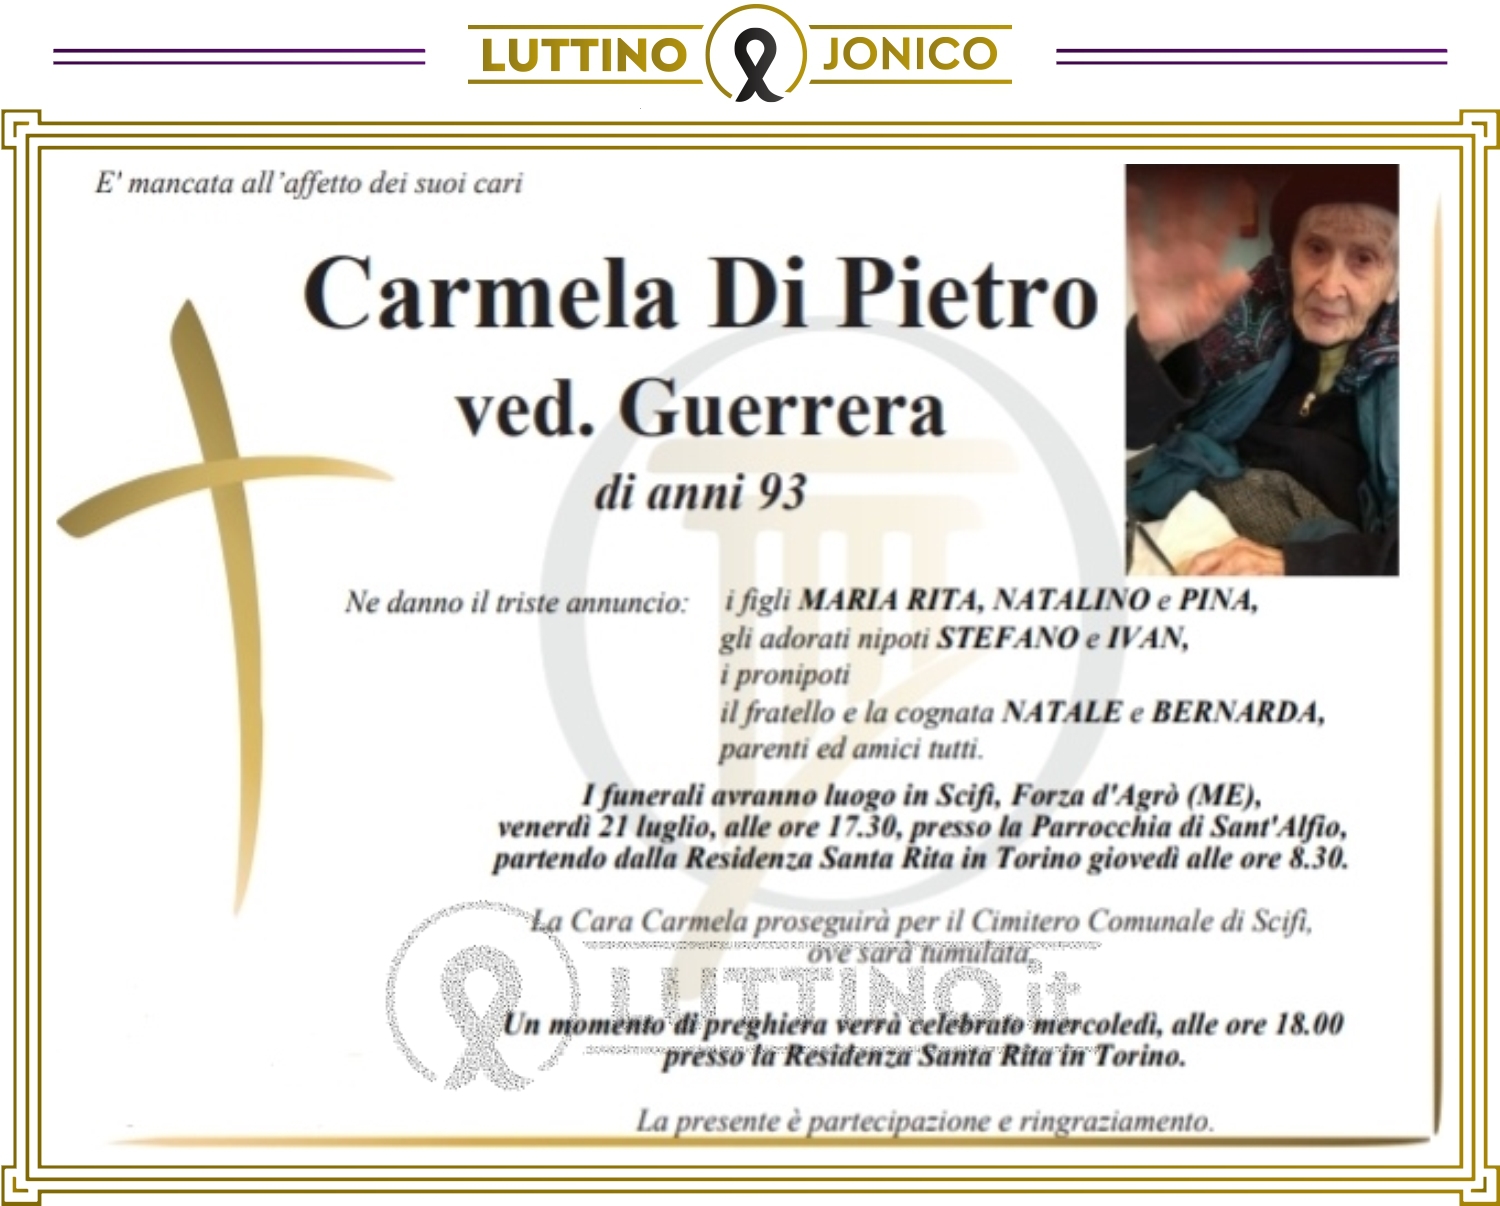 Carmela Di Pietro